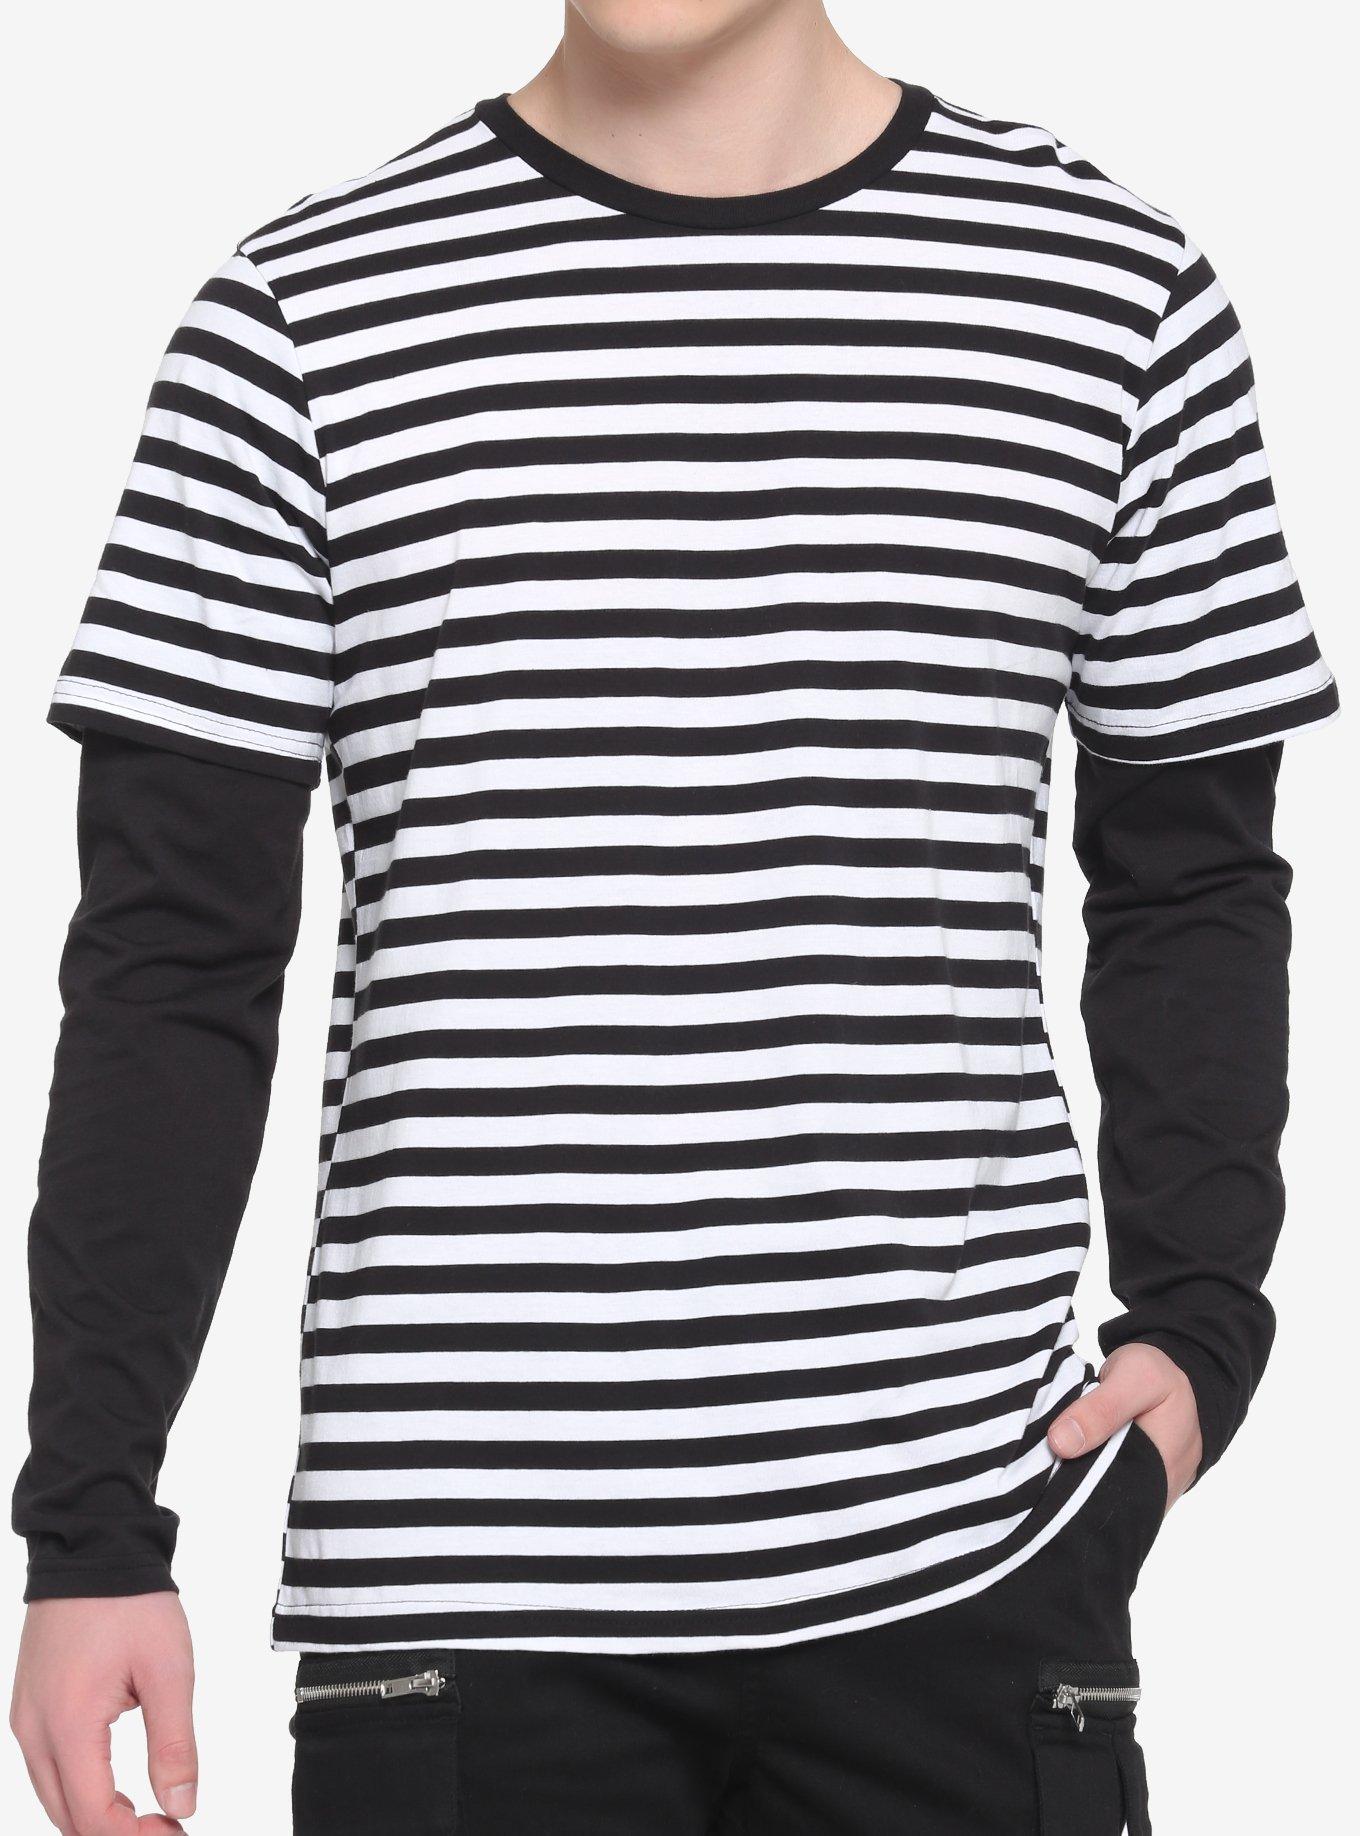 Black & White Stripe Twofer Long-Sleeve T-Shirt, BLACK  WHITE, hi-res